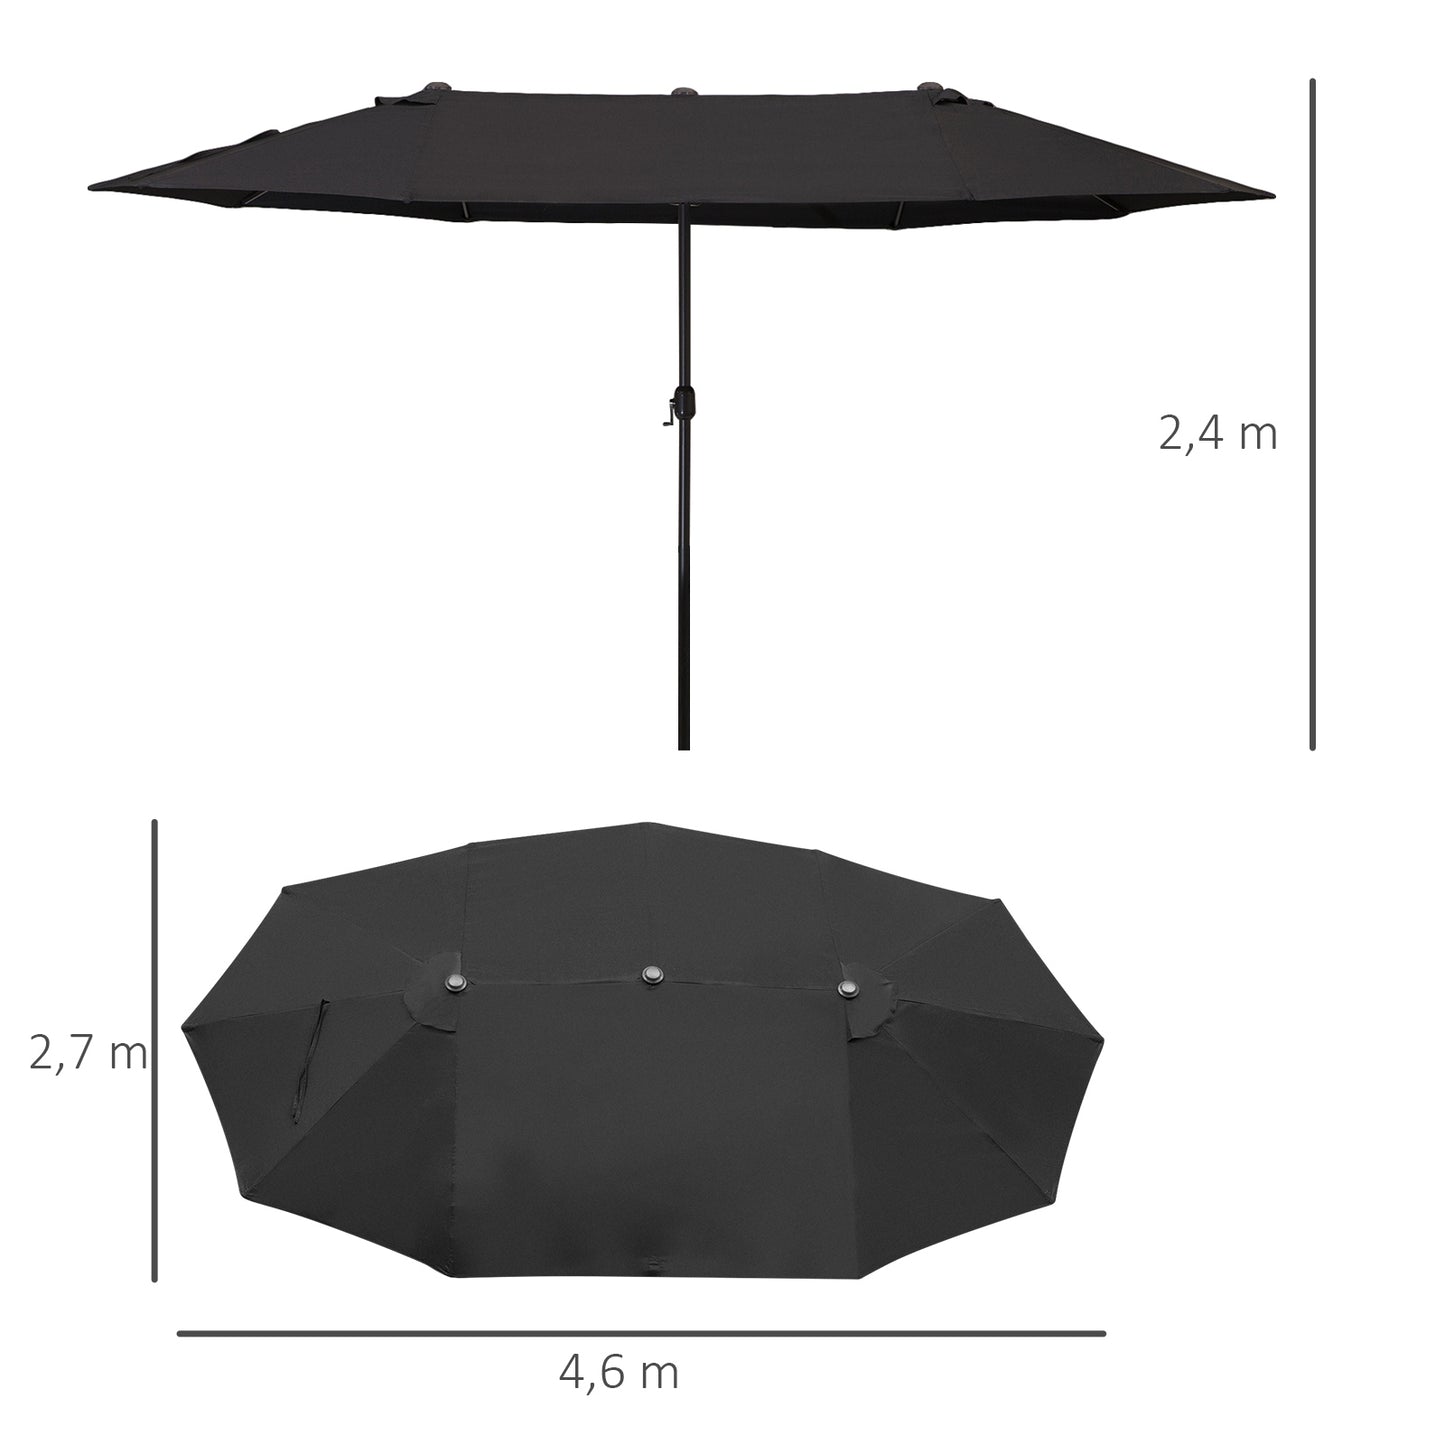 Outsunny Sombrilla de Terraza Exterior Parasol Grande 4,6x2,7m Sombrilla de Jardín con Manivela Manual Resistente al Agua y Protección Solar para Terraza Playa Piscina Negro